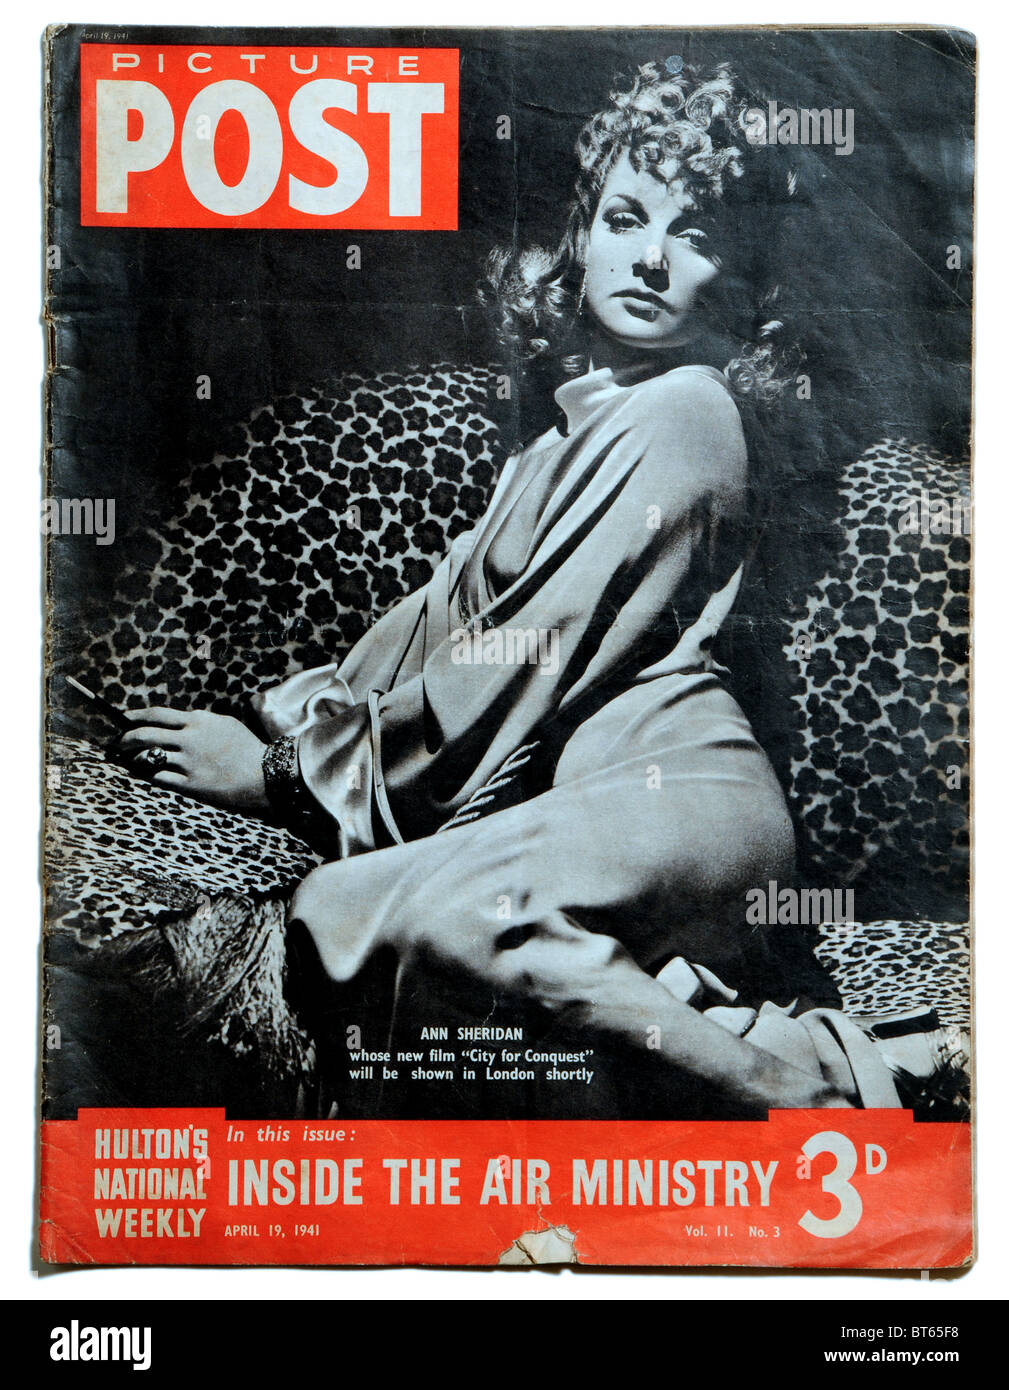 Ann sheridan 19 aprile 1941 città di conquista film di star Immagine Post photojournalistic prominente rivista pubblicata Regno re Foto Stock